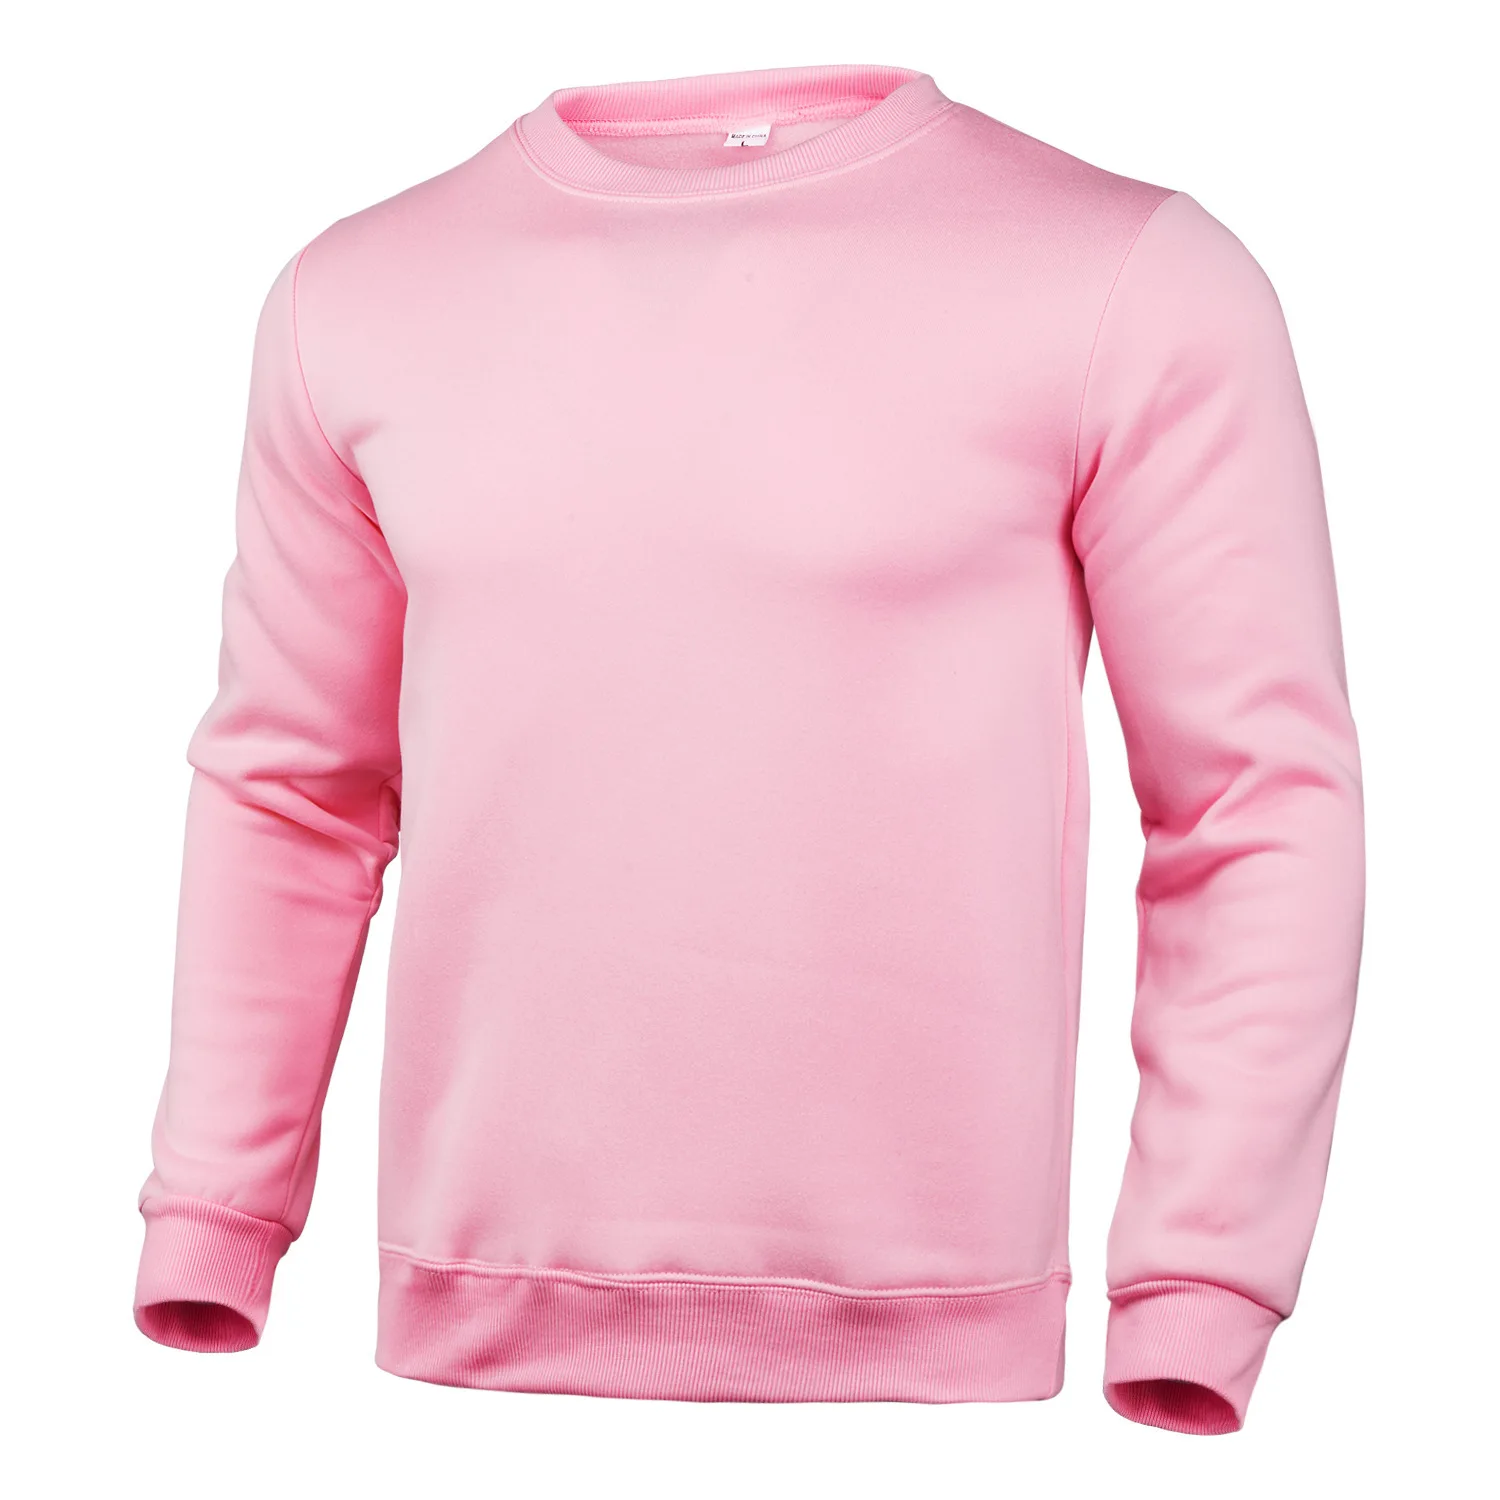 
Оптовая торговля полиэстер пустой пользовательский пуловер Crewneck простые толстовки для мужчин 